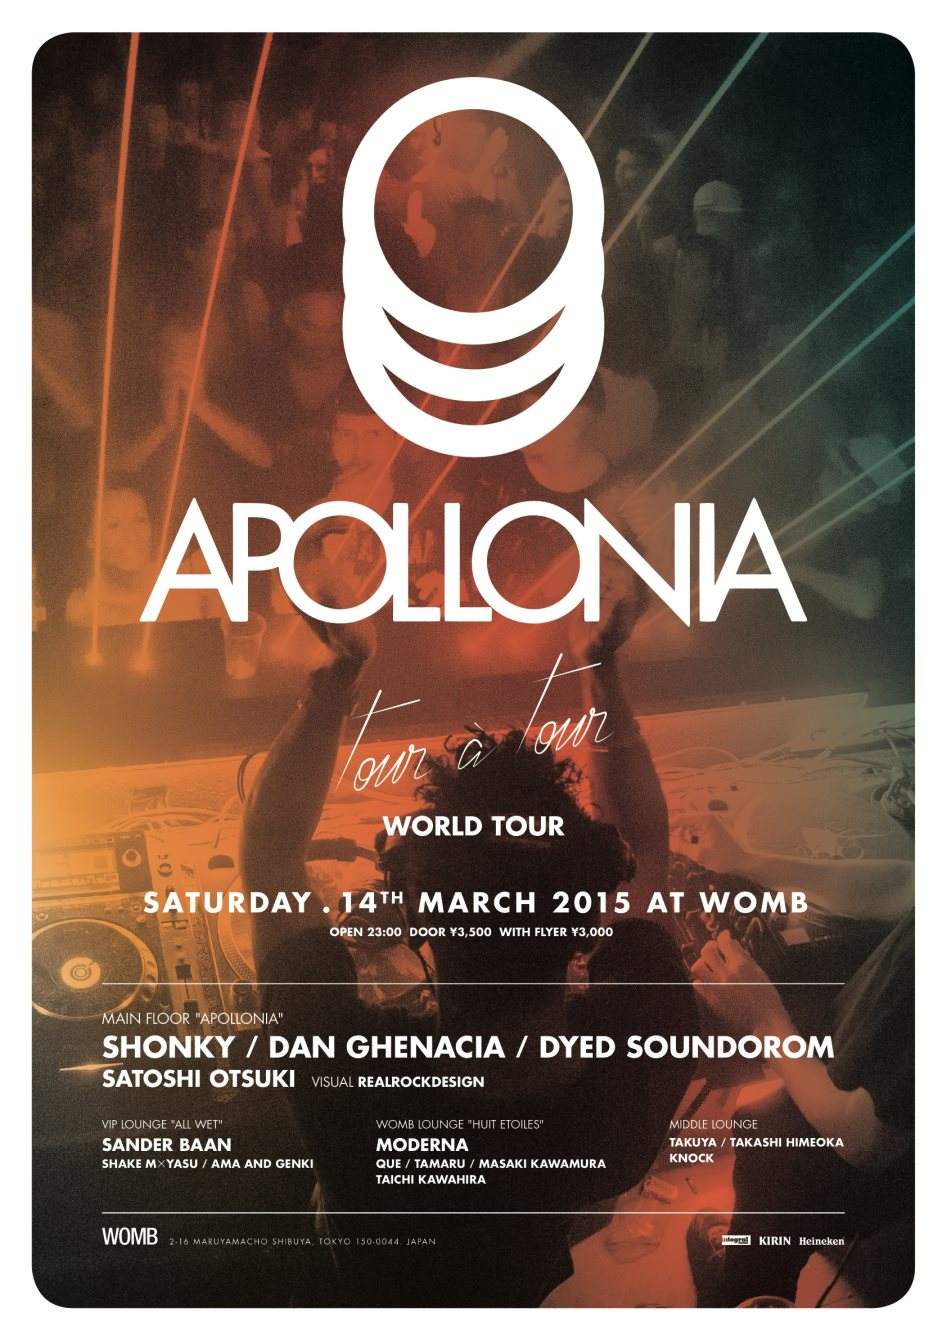 Womb presents Apollonia 'Tour A Tour' World Tour - Página frontal